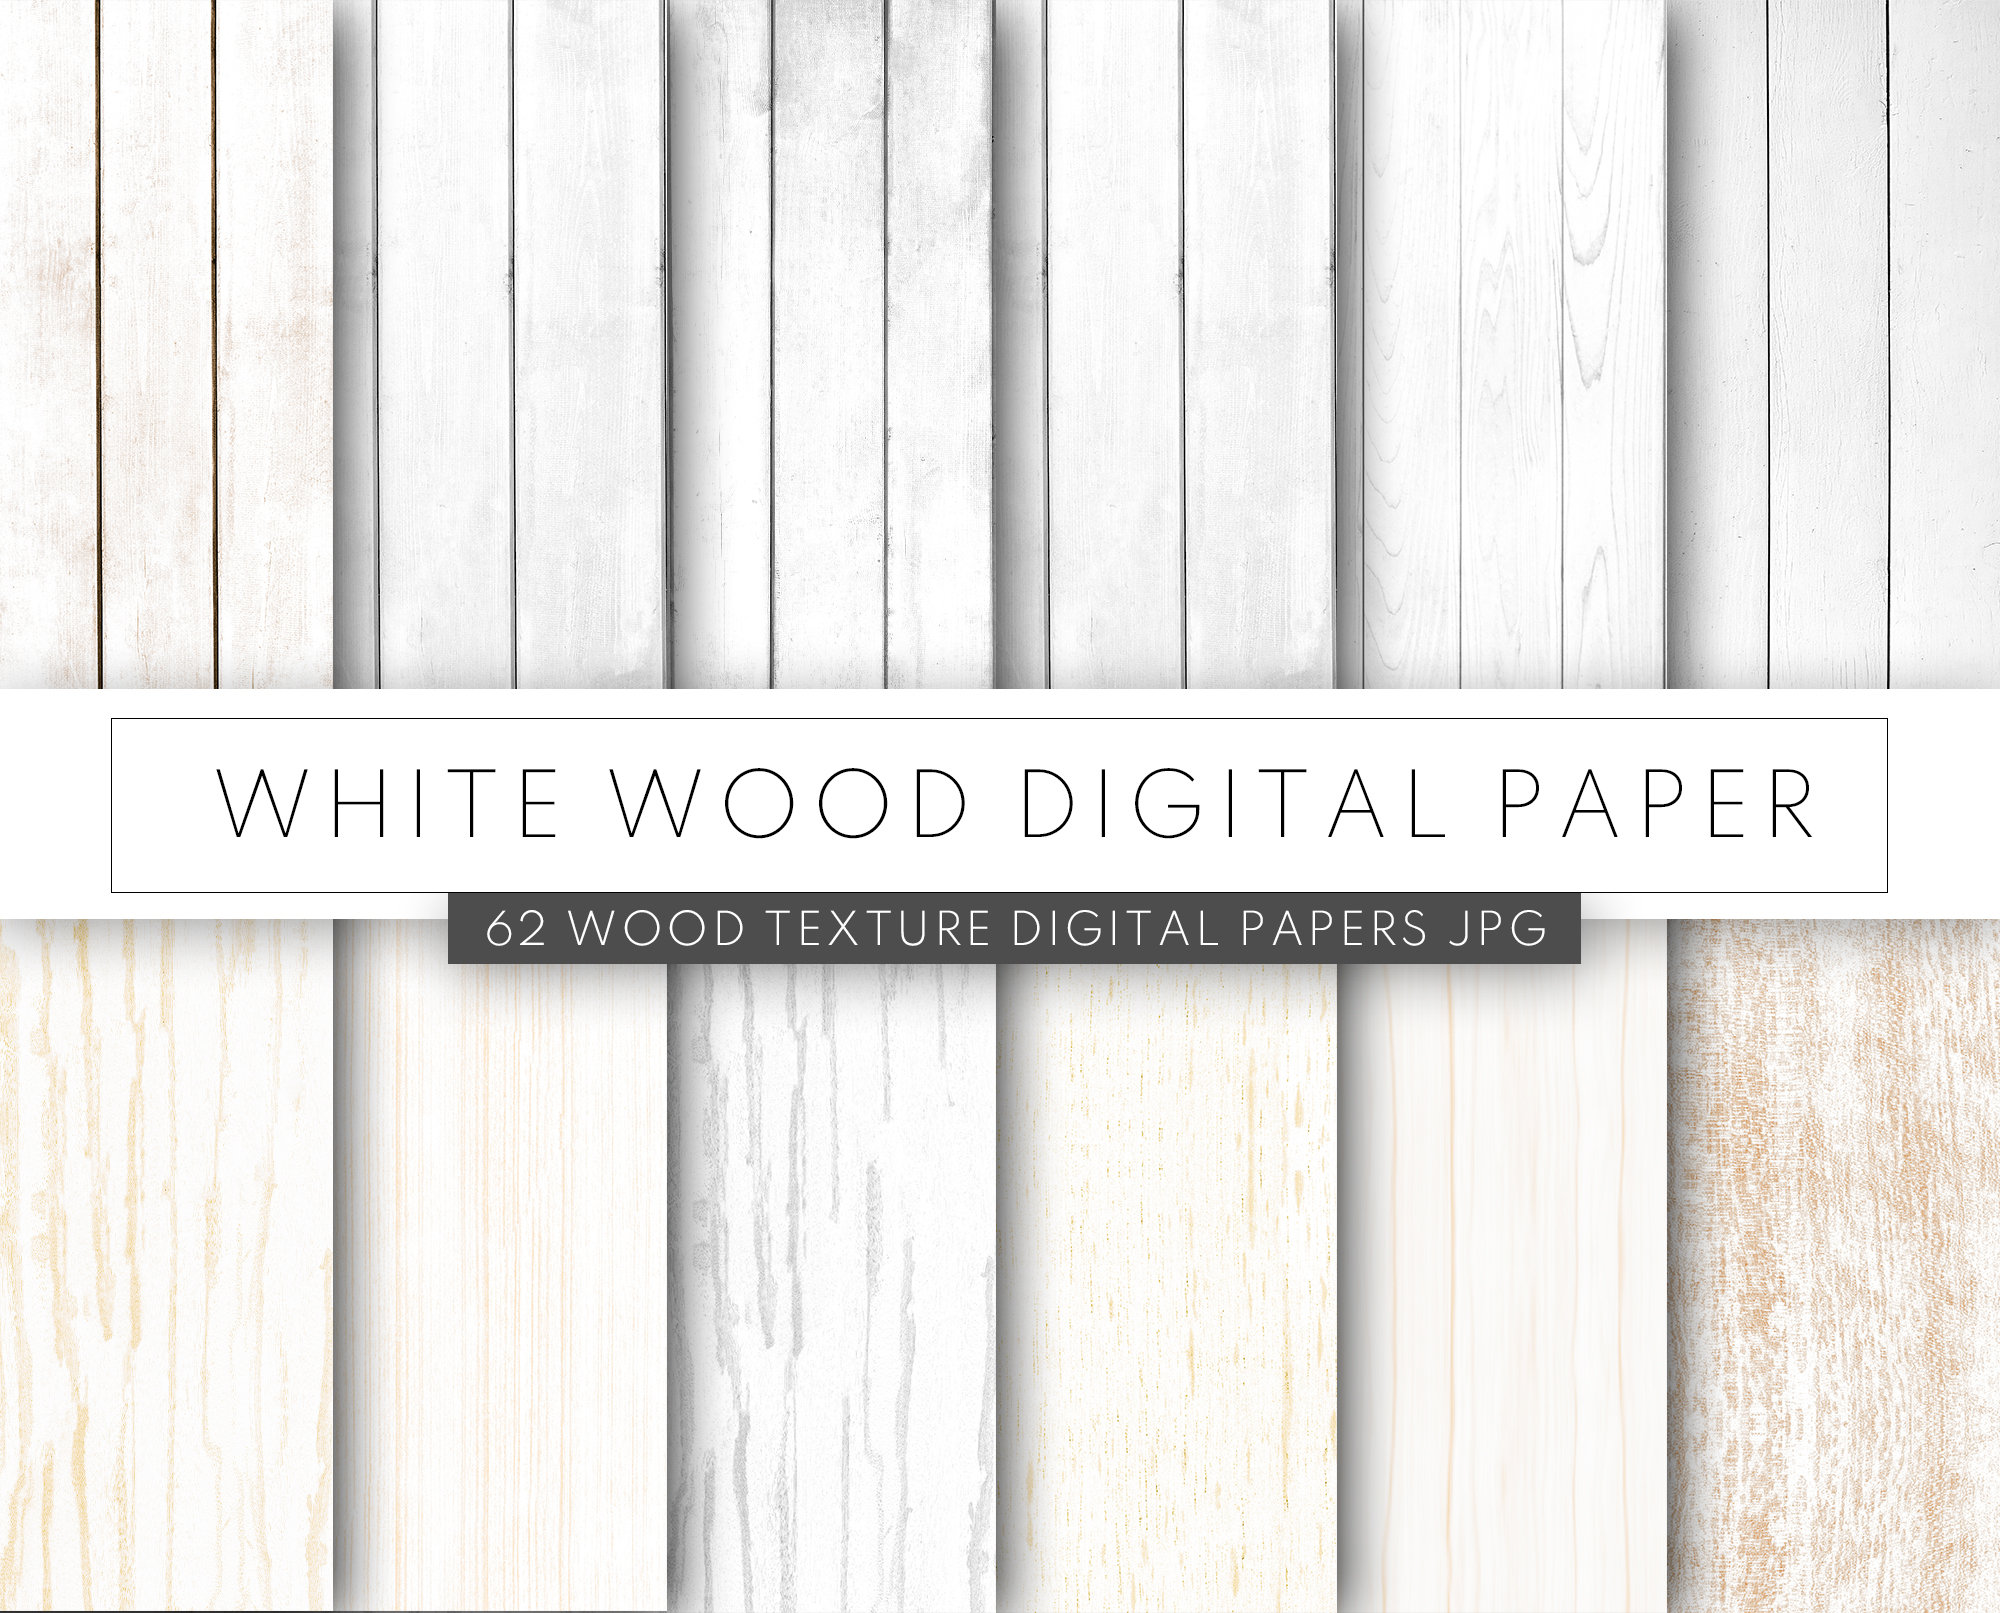 Gỗ màu trắng Etsy là ưu điểm nổi bật của sản phẩm giấy vân gỗ màu nhạt và sàn gỗ vân gỗ. Sản phẩm này không chỉ mang tới vẻ đẹp sang trọng và tự nhiên mà còn giúp bạn tạo nên phong cách độc đáo và tinh tế cho ngôi nhà của mình. Hãy chiêm ngưỡng hình ảnh để cảm nhận sự đẳng cấp của sản phẩm.